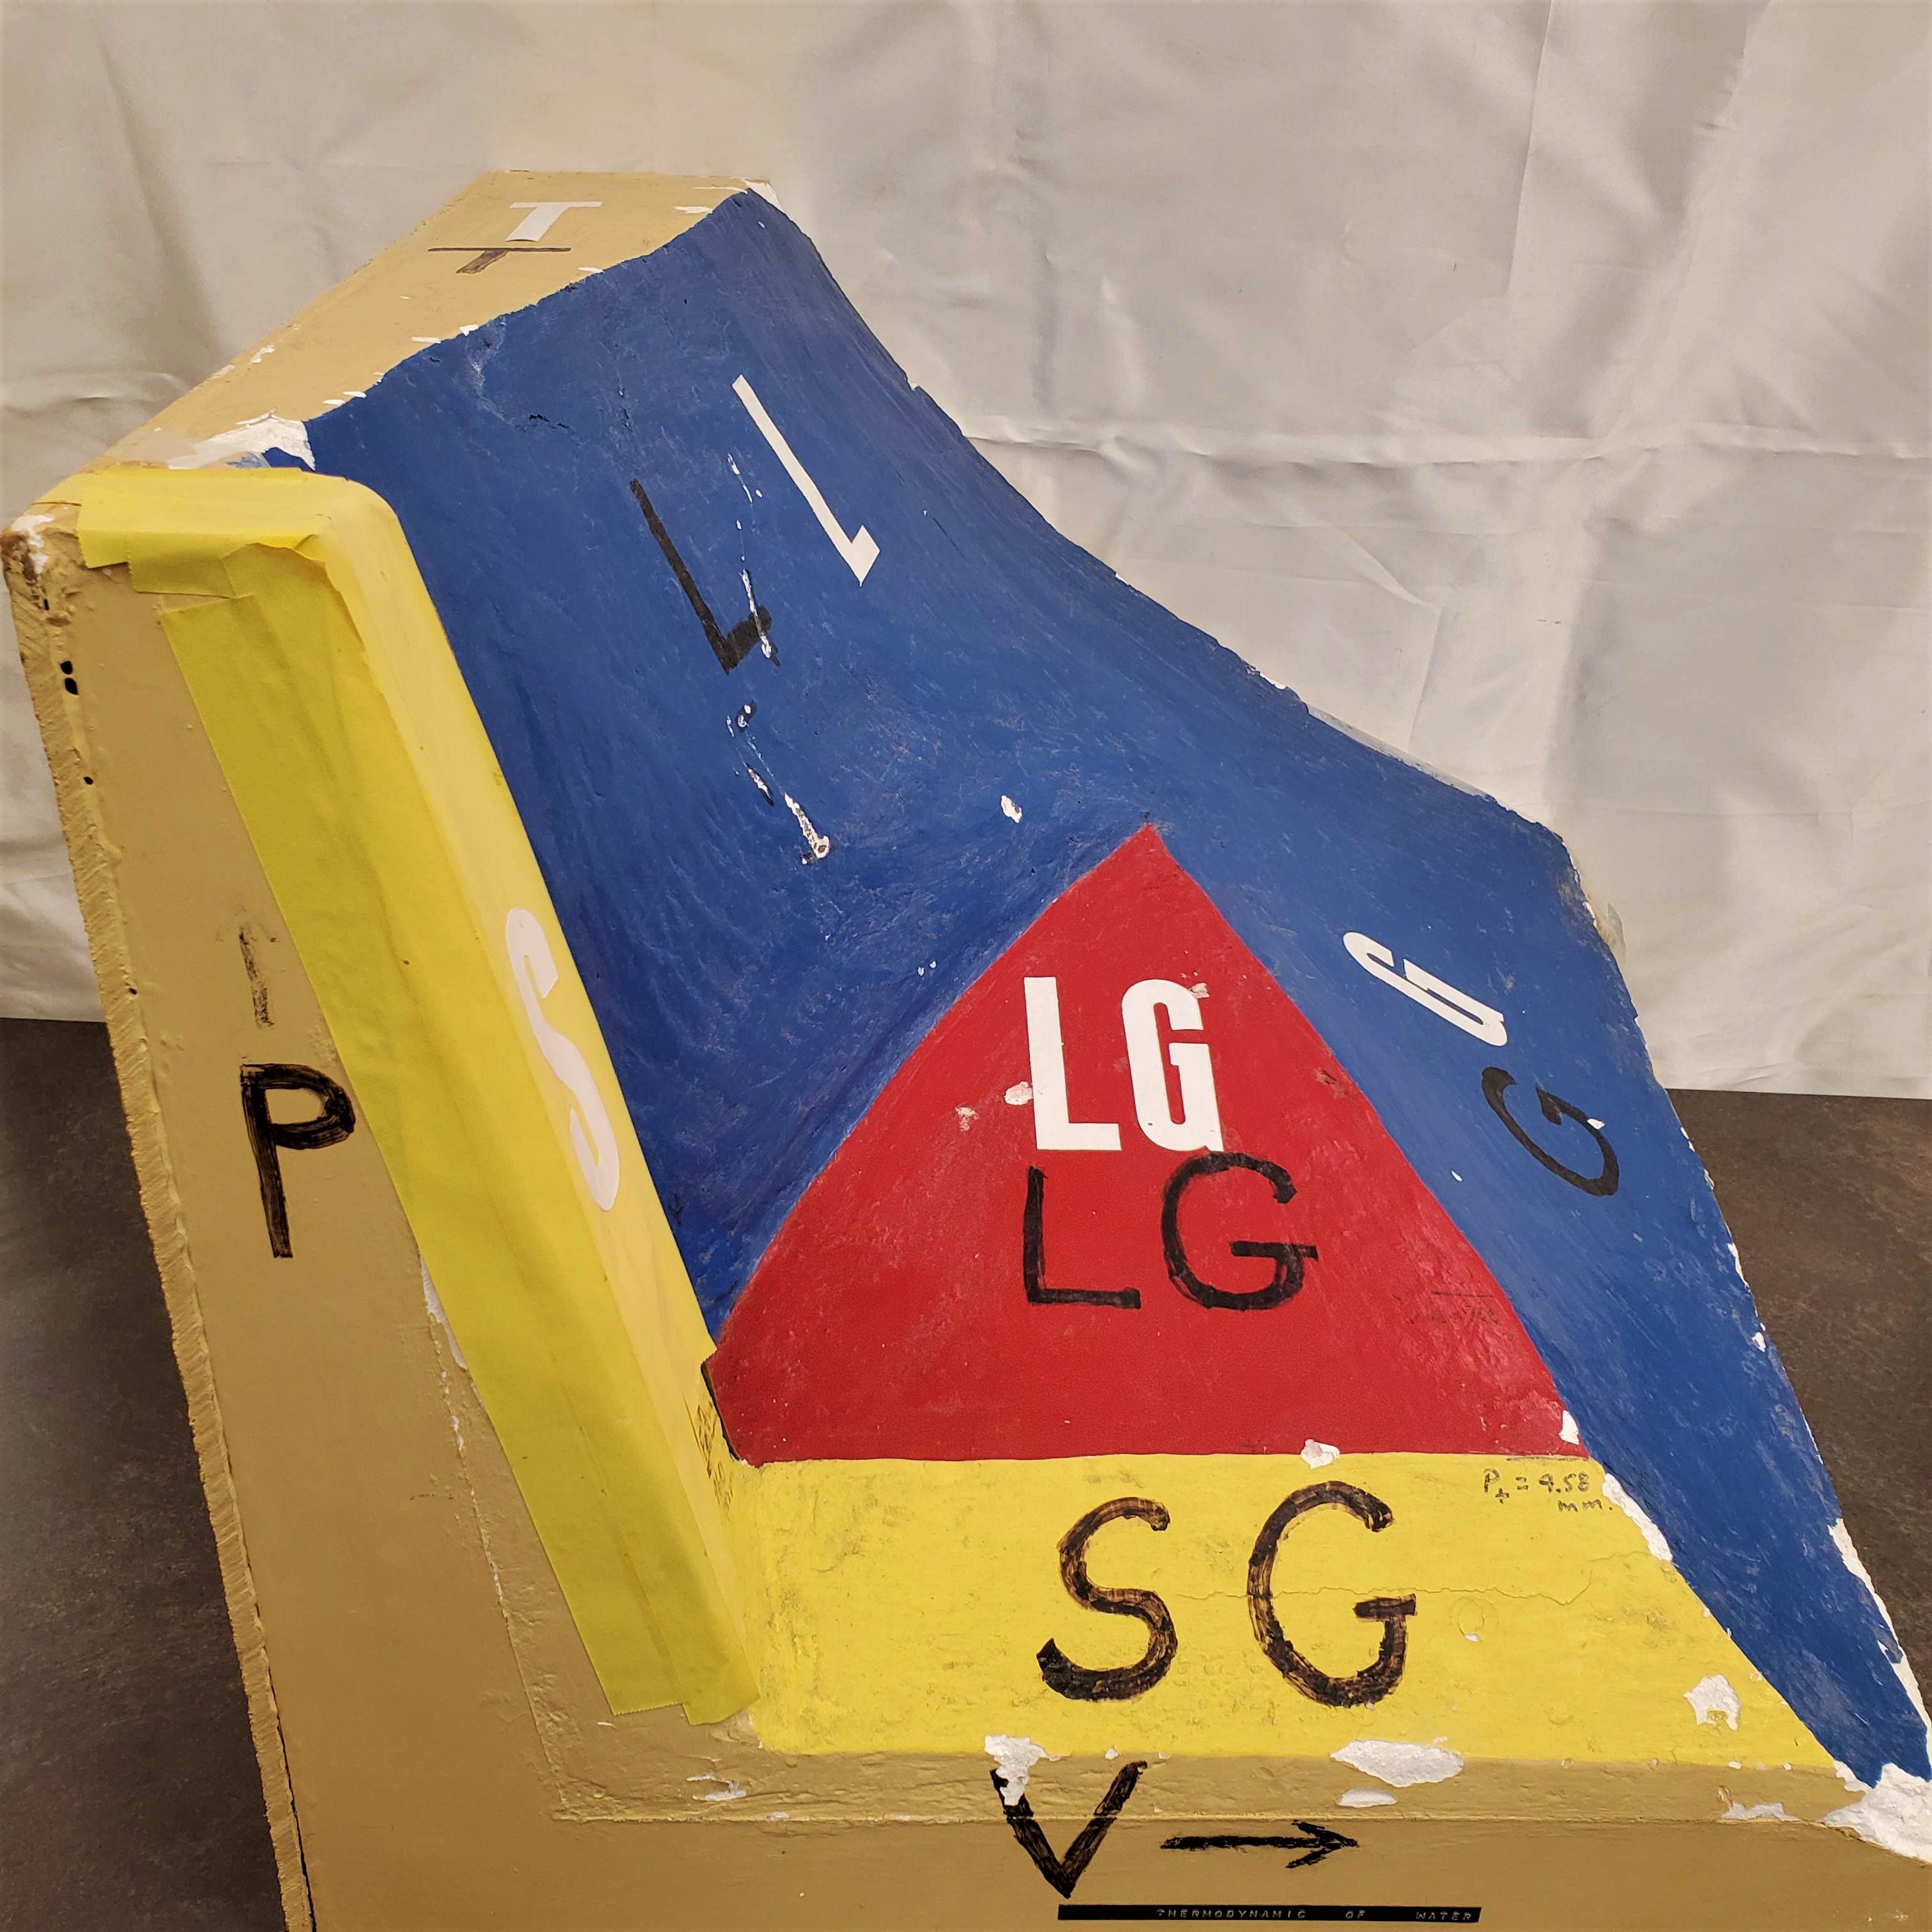 Model of P-V-T surface. 3